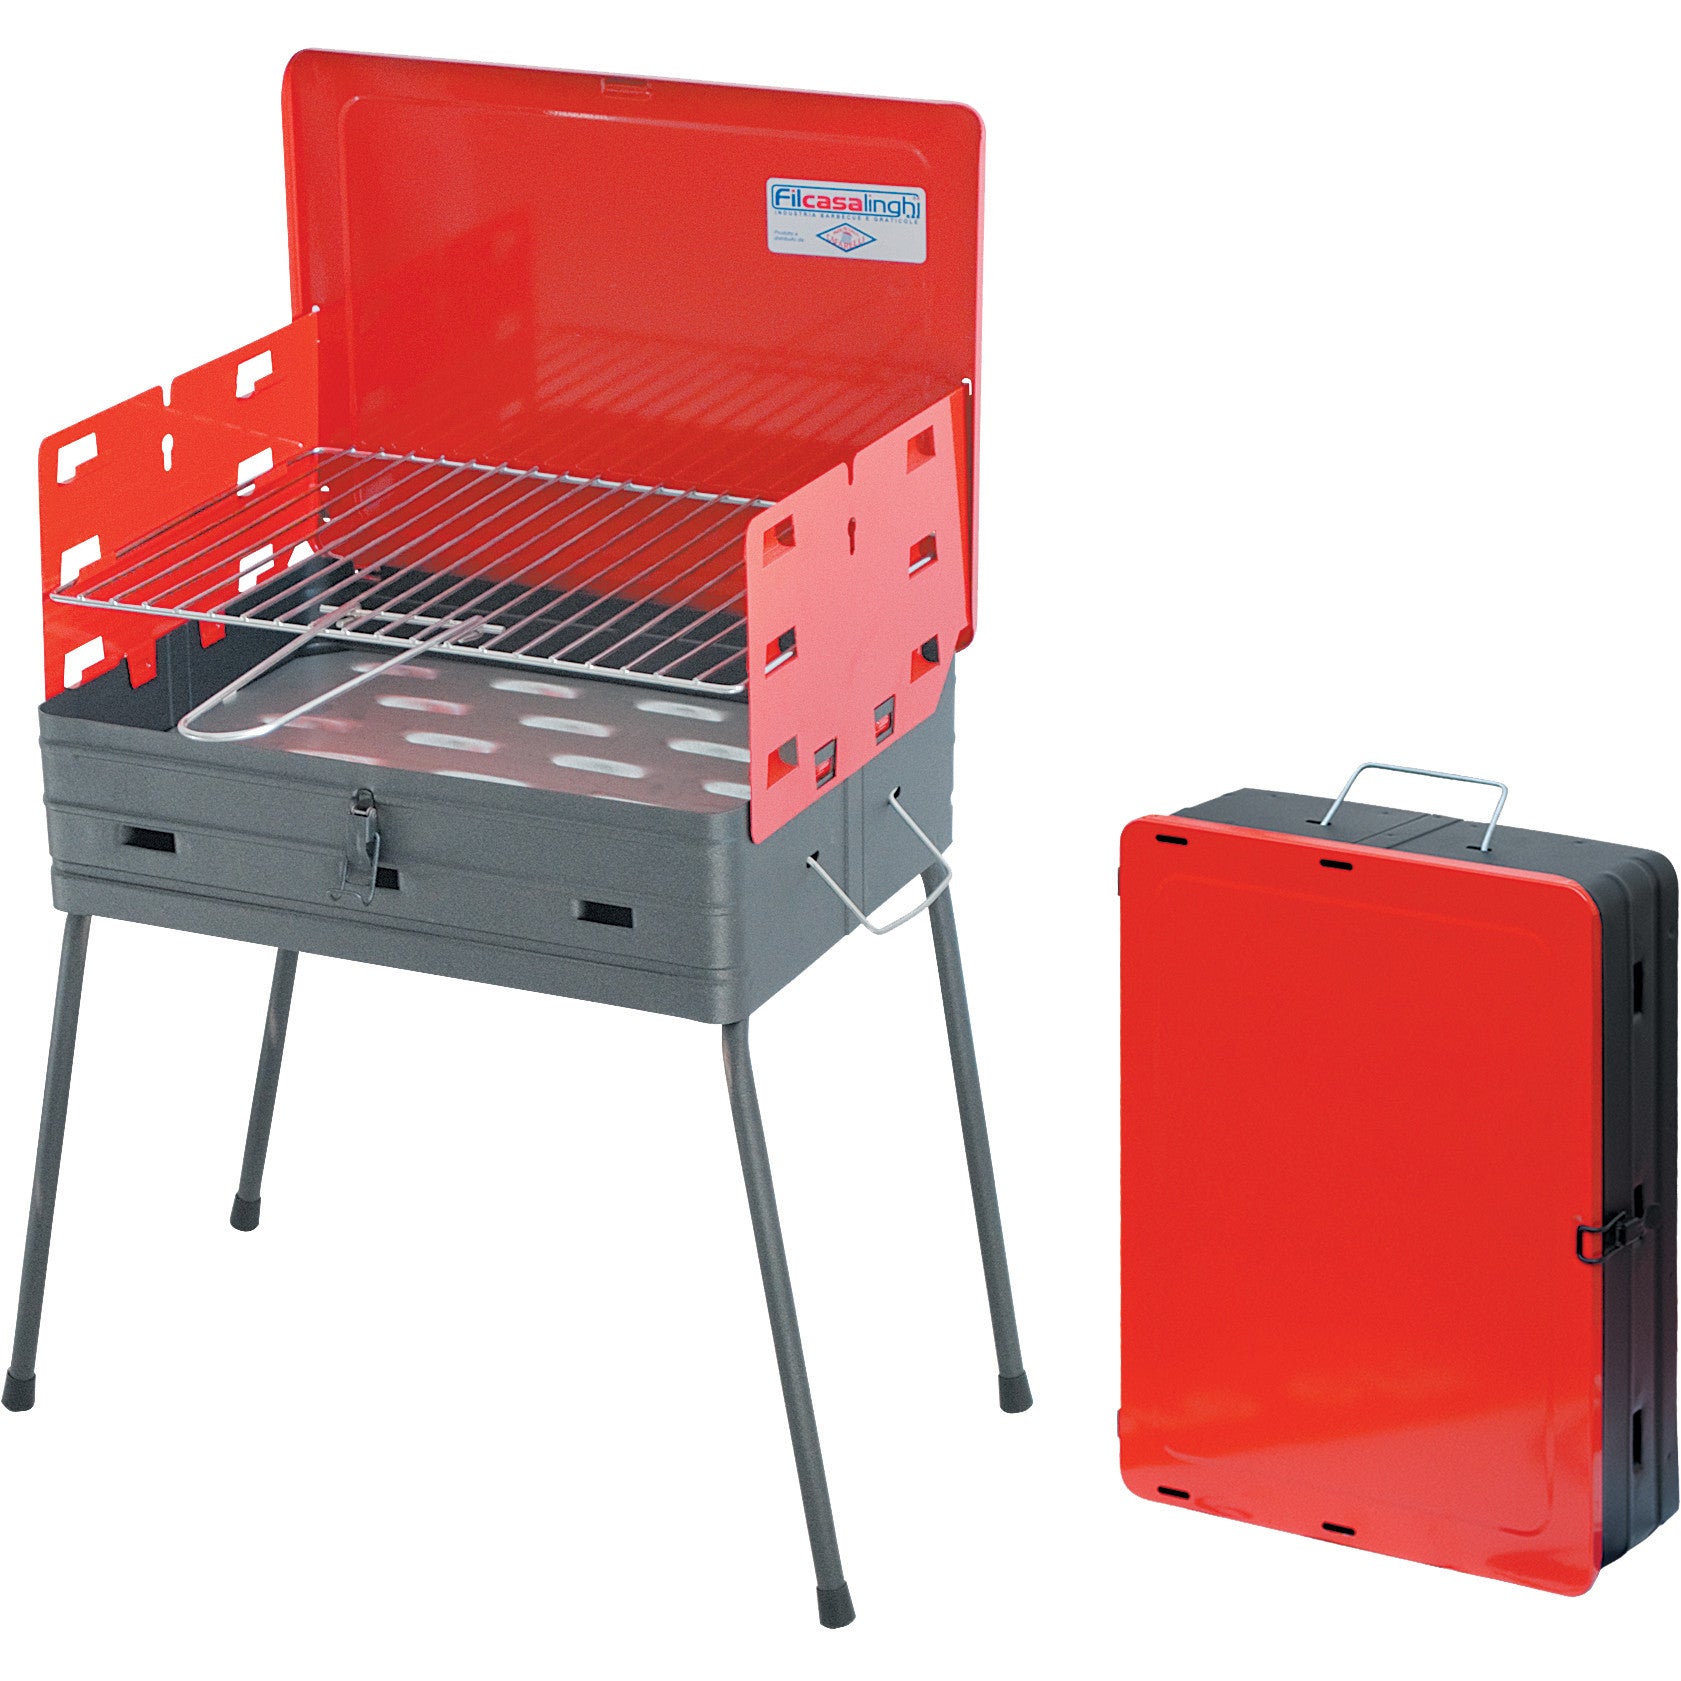 Barbecue richiudibile a valigetta - cm 41x30x57h